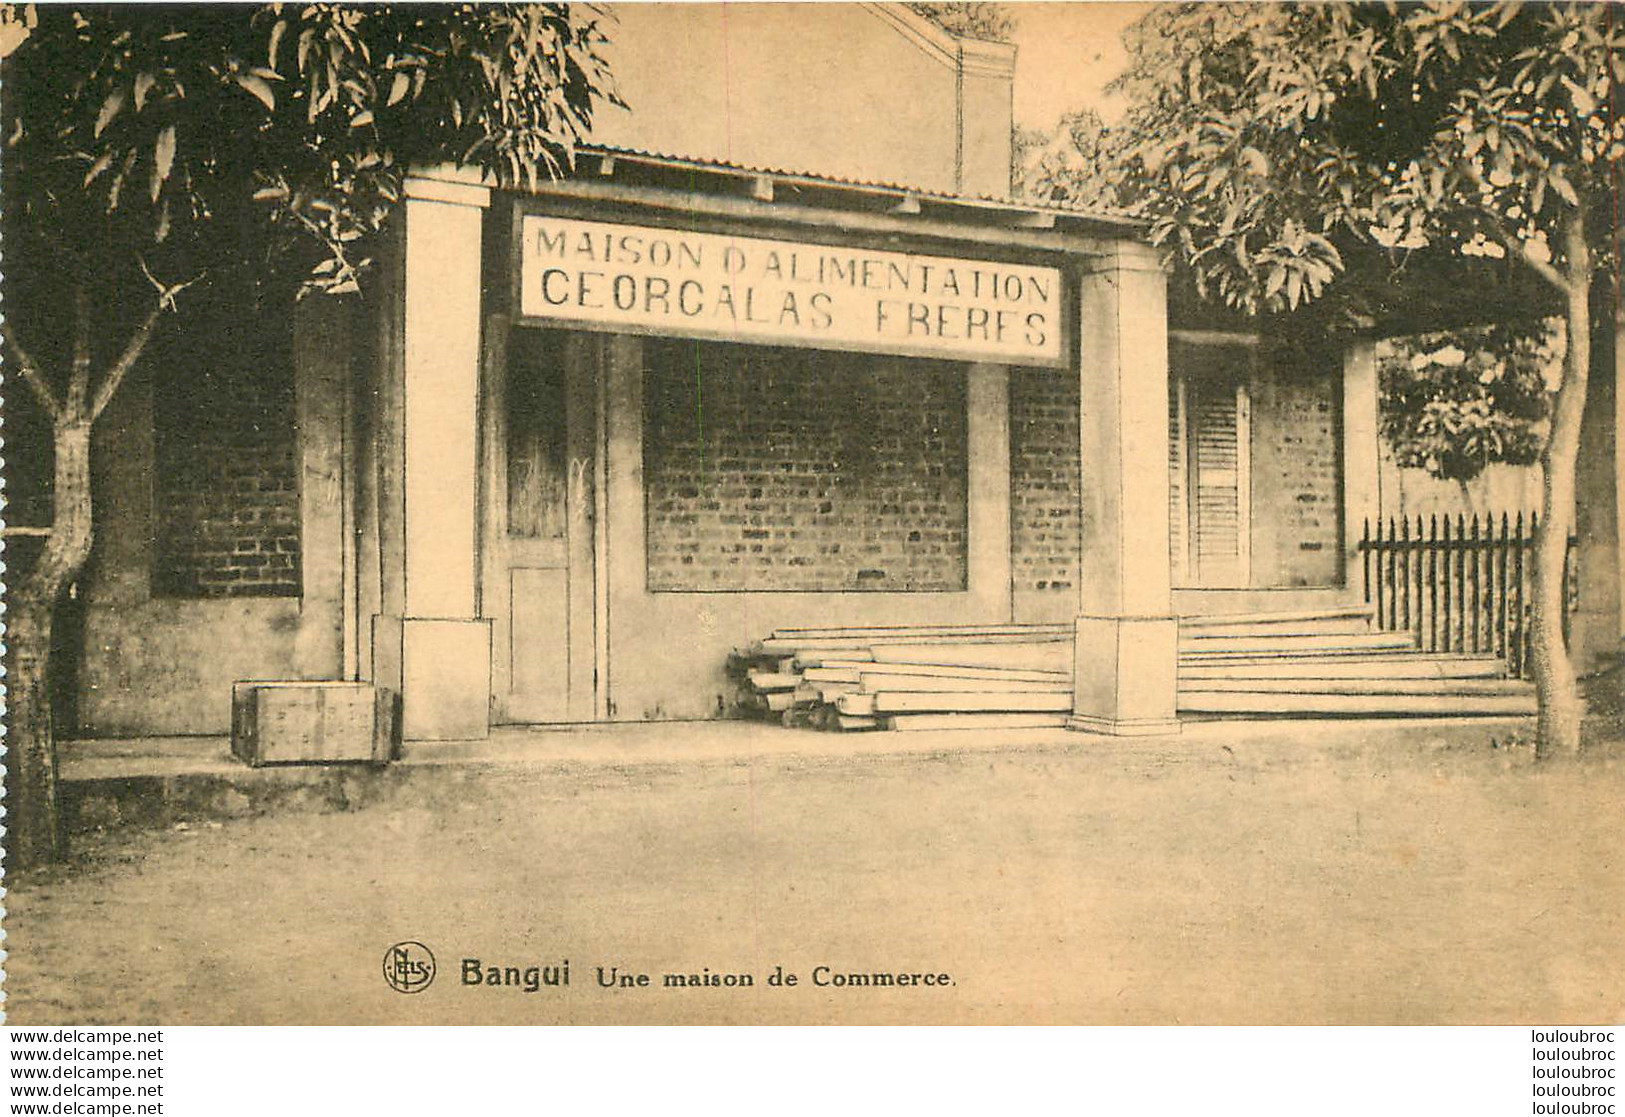 BANGUI UNE MAISON DE COMMERCE  Ref18 - Chad